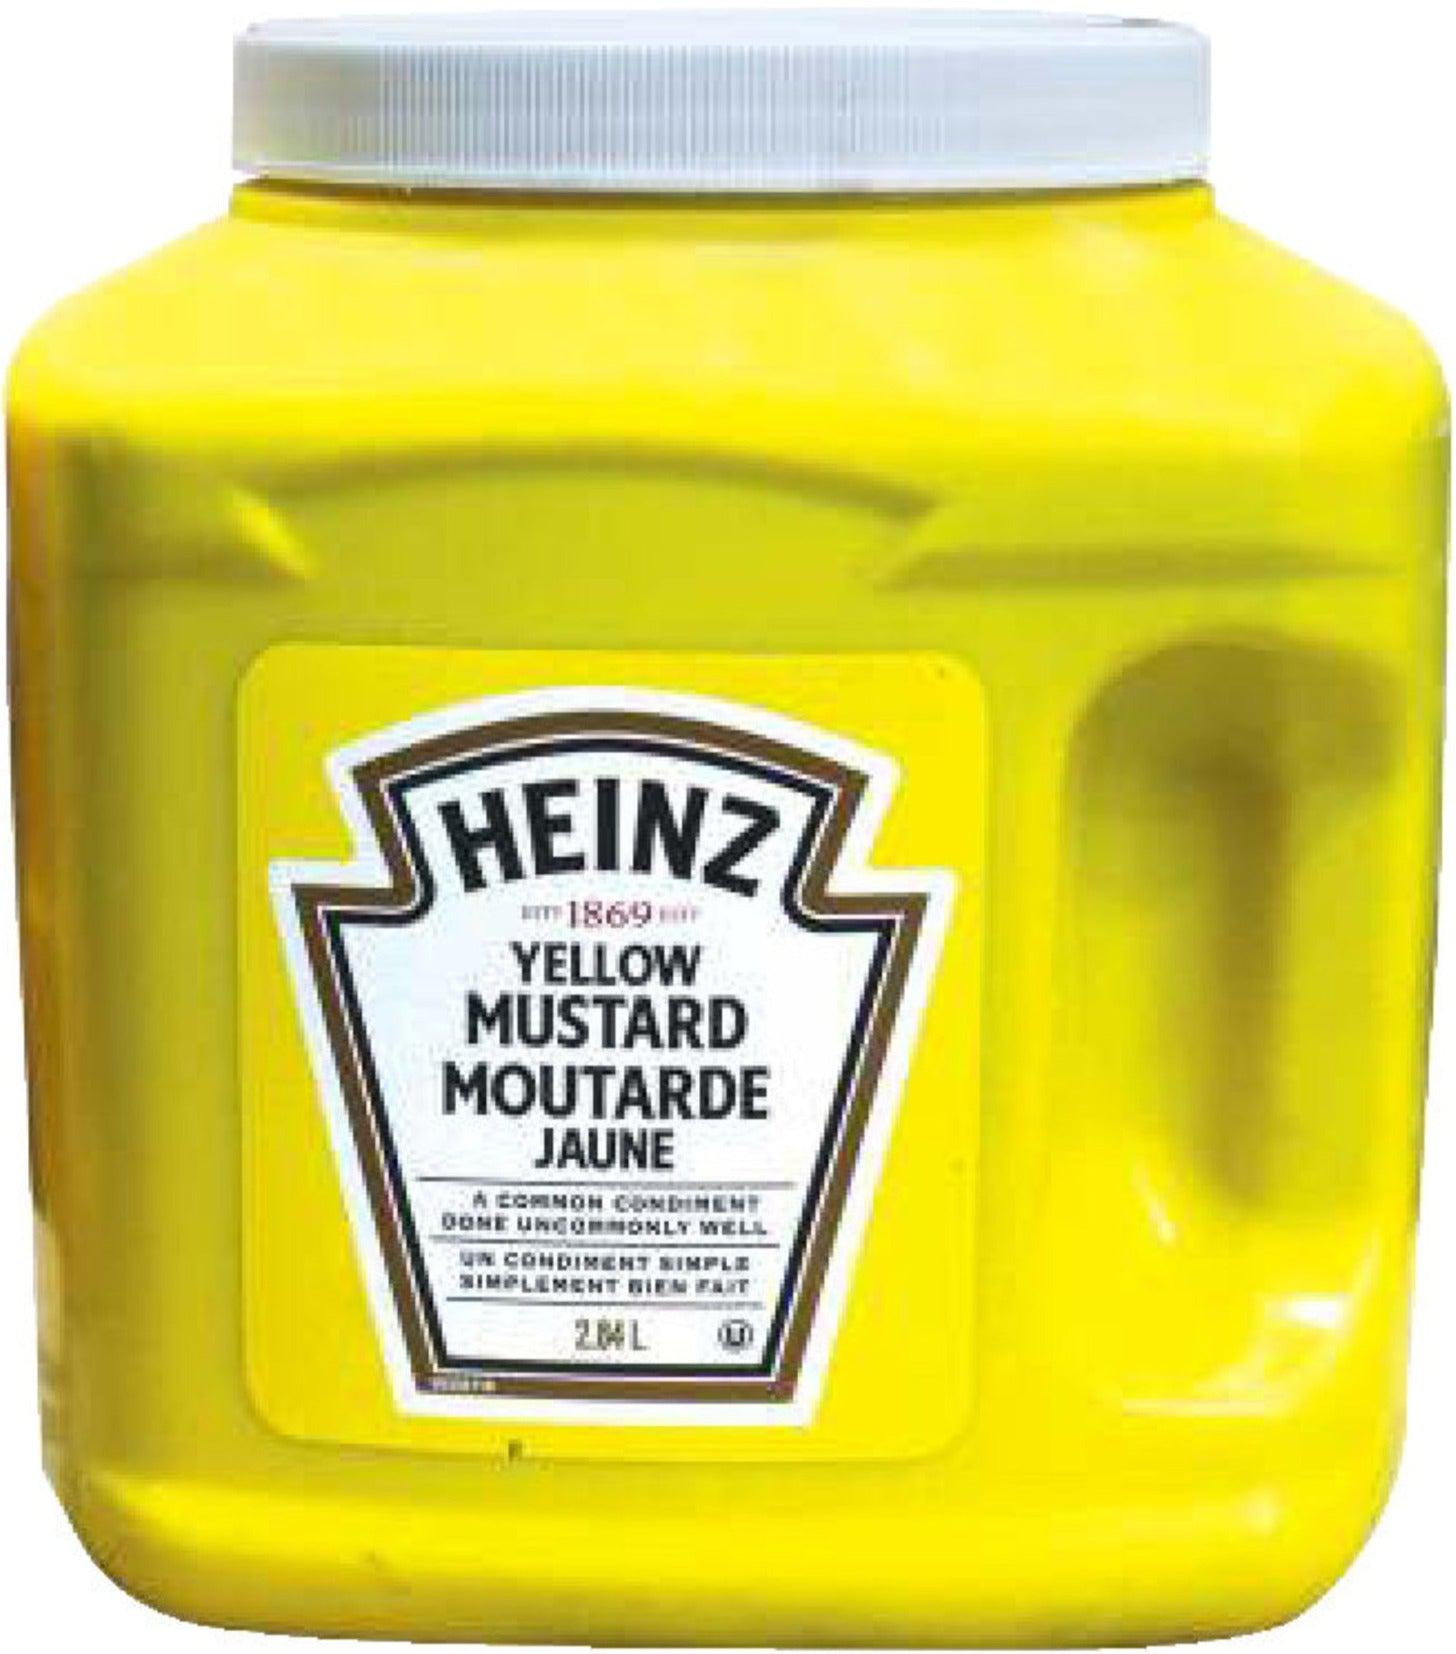 Moutarde Jaune - Heinz - 375 mL